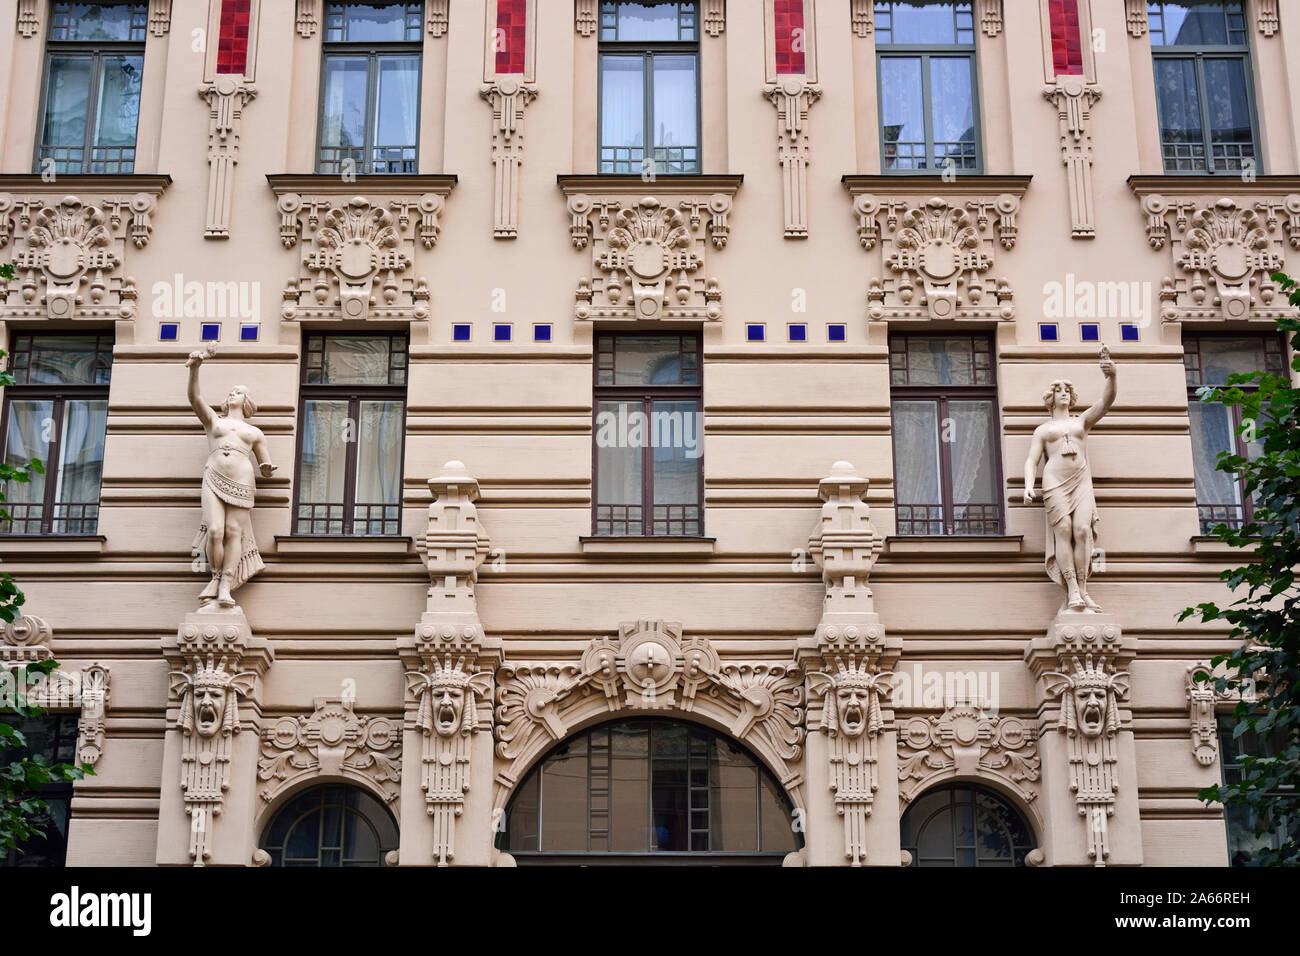 Architettura Art Nouveau (Jugendstil architecture). Un sito Patrimonio Mondiale dell'Unesco. Riga, Lettonia Foto Stock